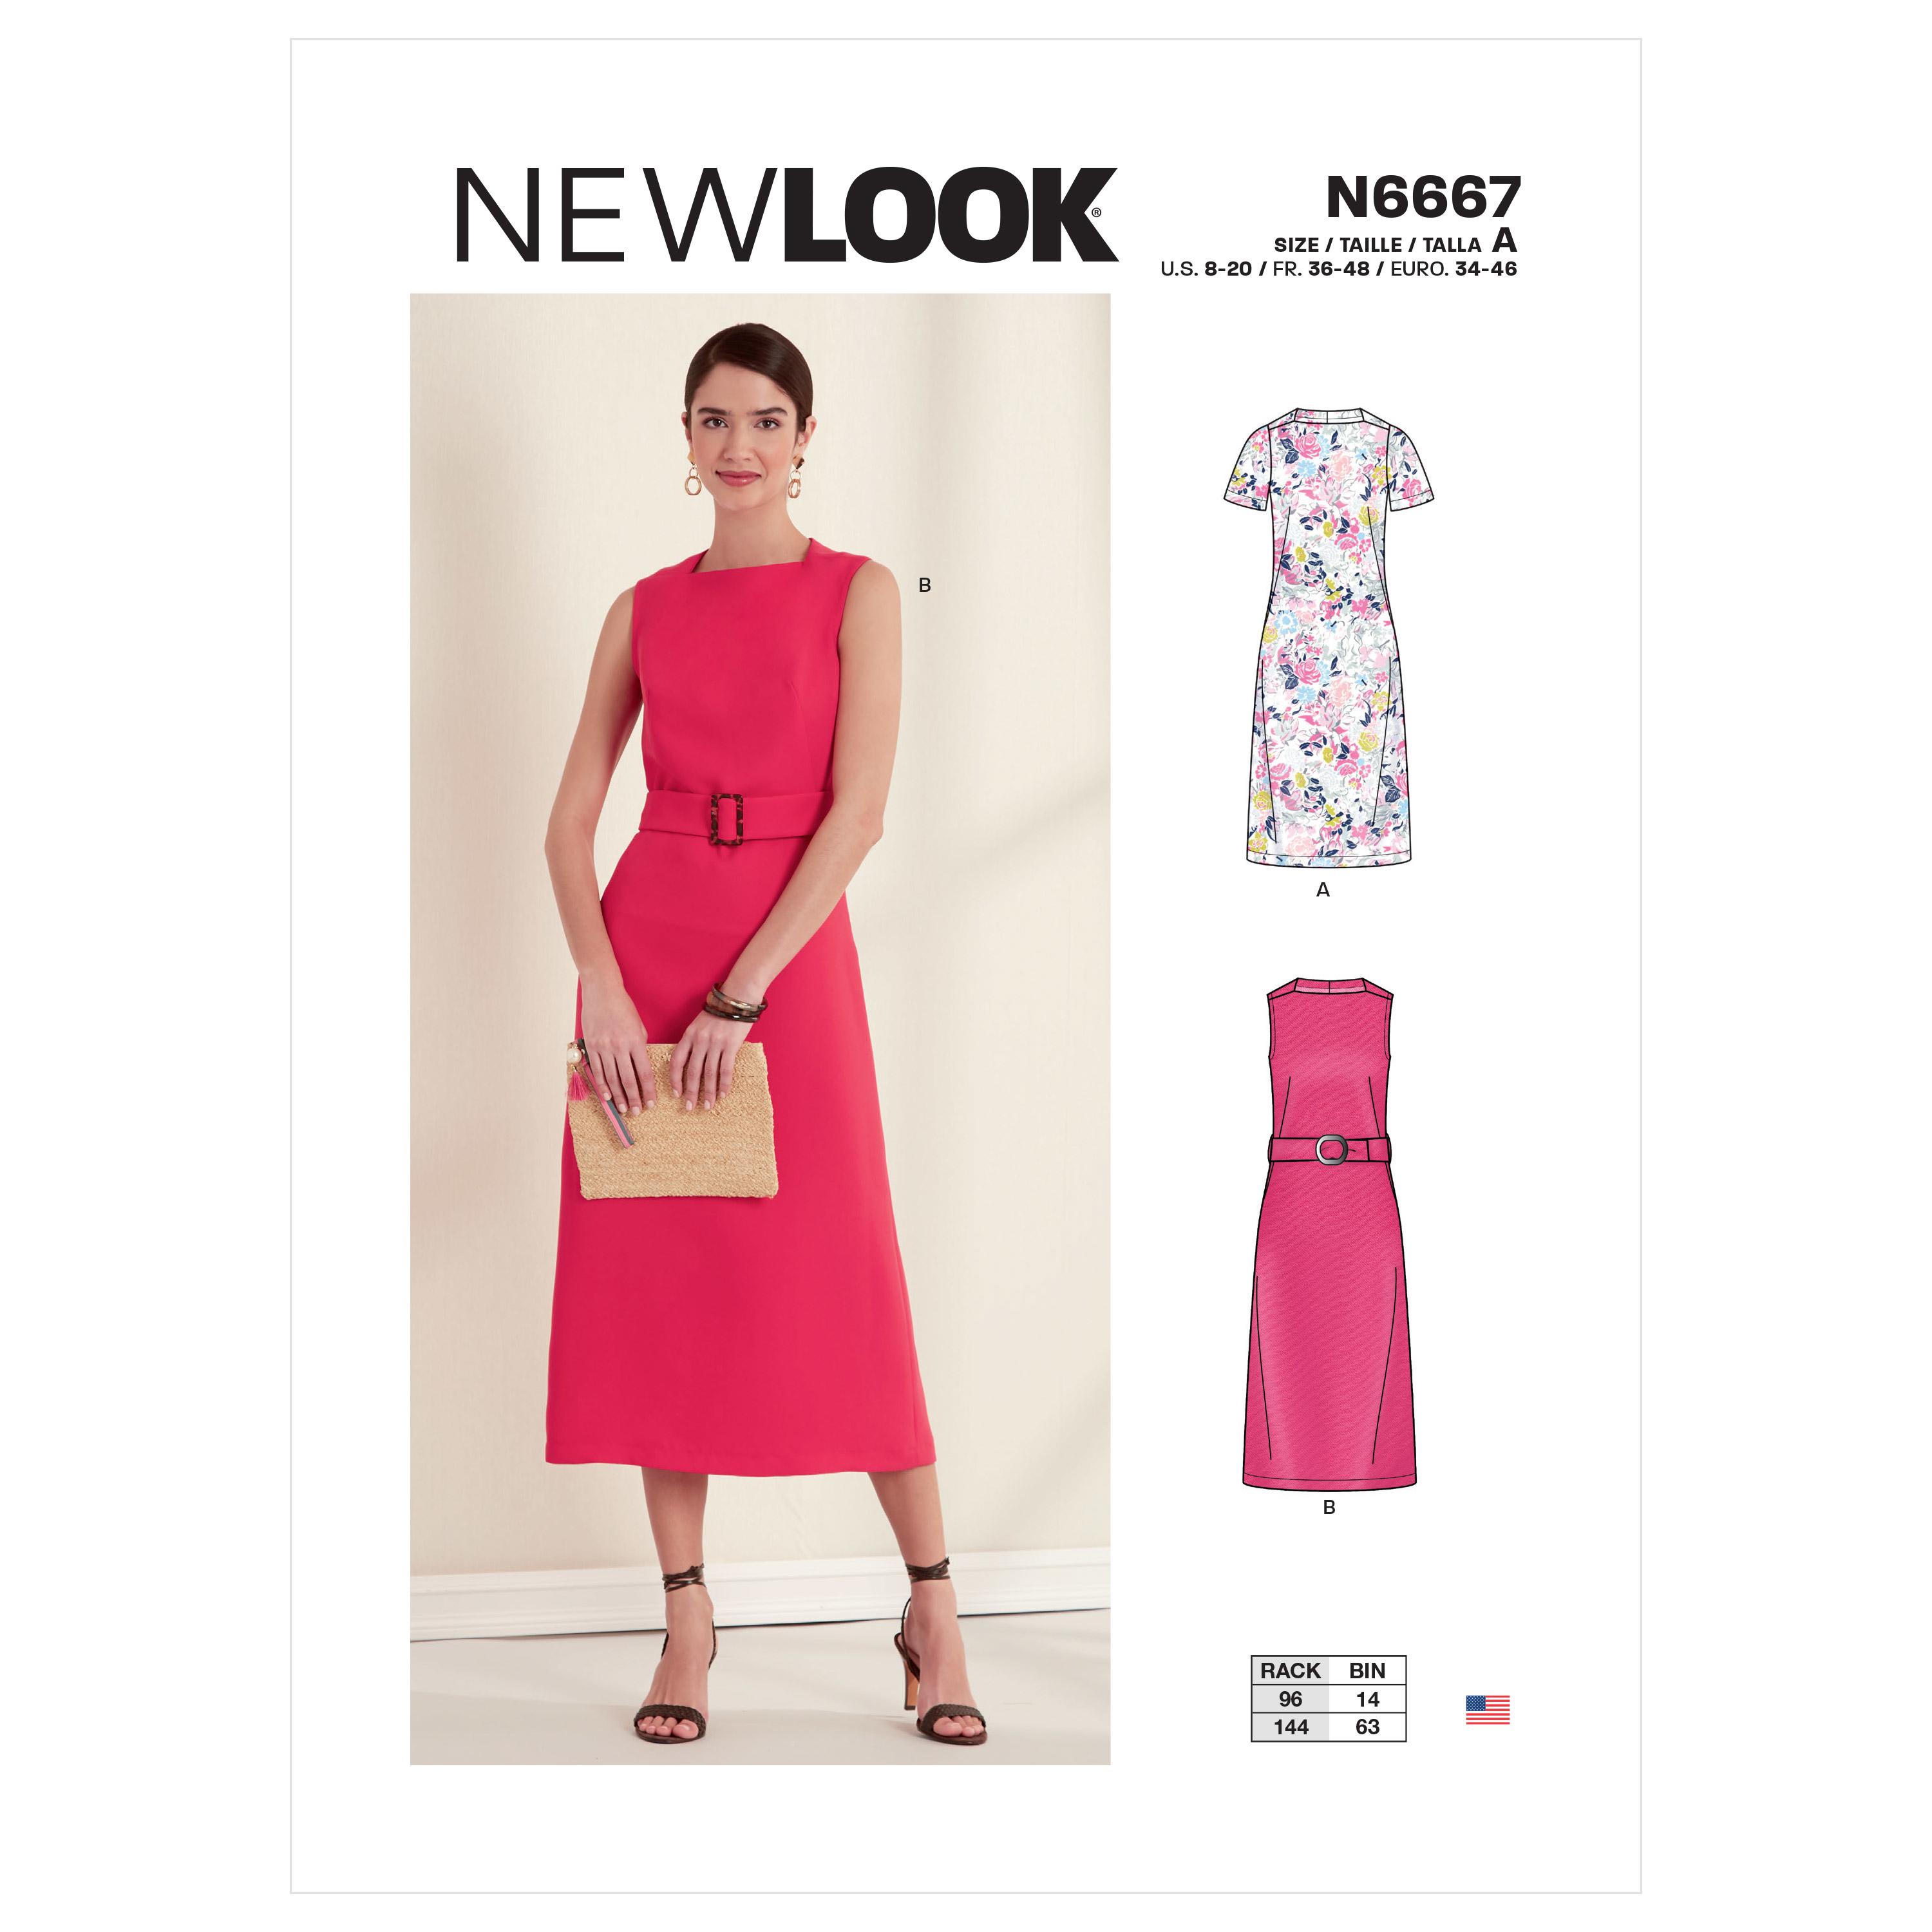 New Look Sewing Pattern N6667 Misses' Dress